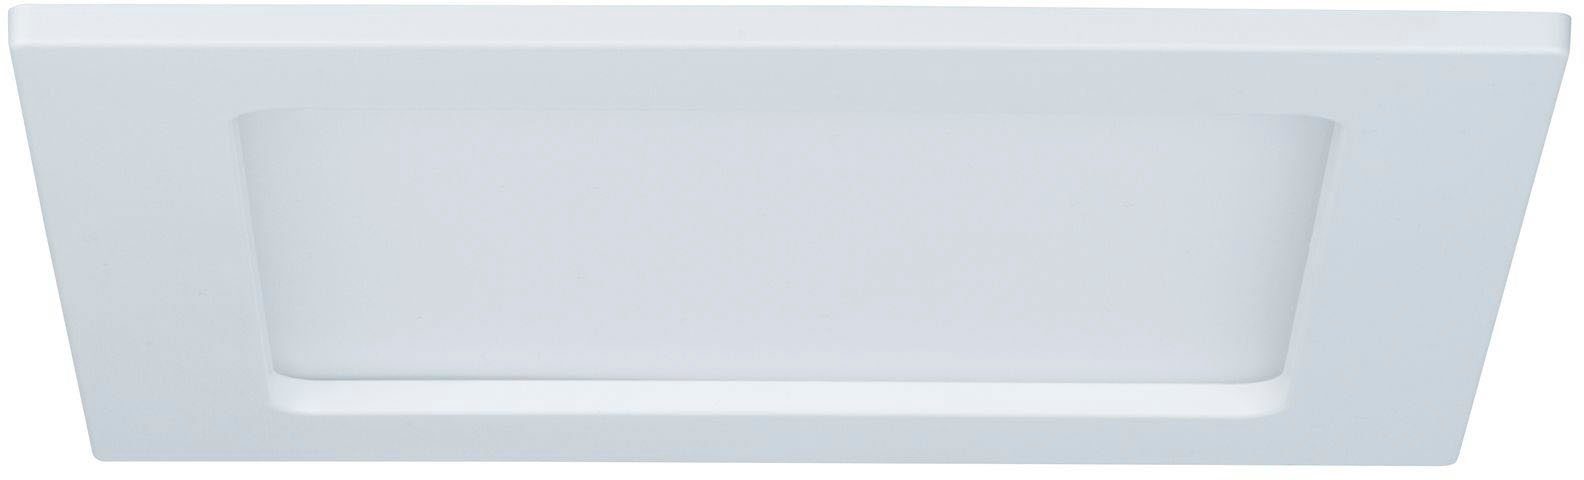 fest 165x165mm Paulmann Einbaupanel LED LED 2.700K 165x165mm Panel Weiß LED 2.700K LED 11,1W Weiß, 11,1W eckig Warmweiß, Einbaupanel integriert, eckig